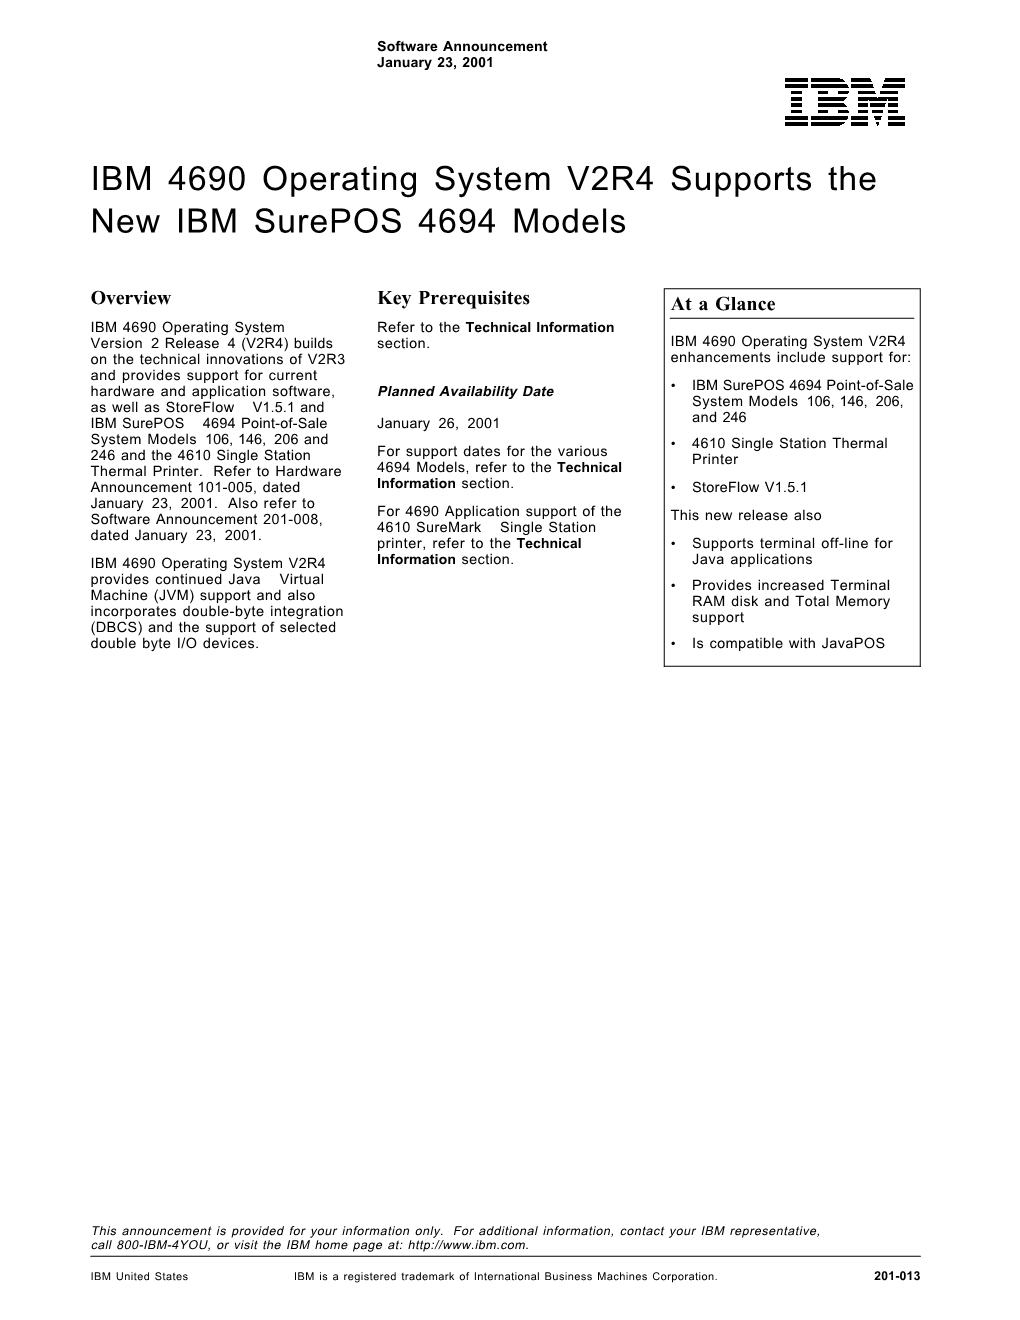 IBM 4690 Operating System V2R4 Supports the New IBM Surepos 4694 Models